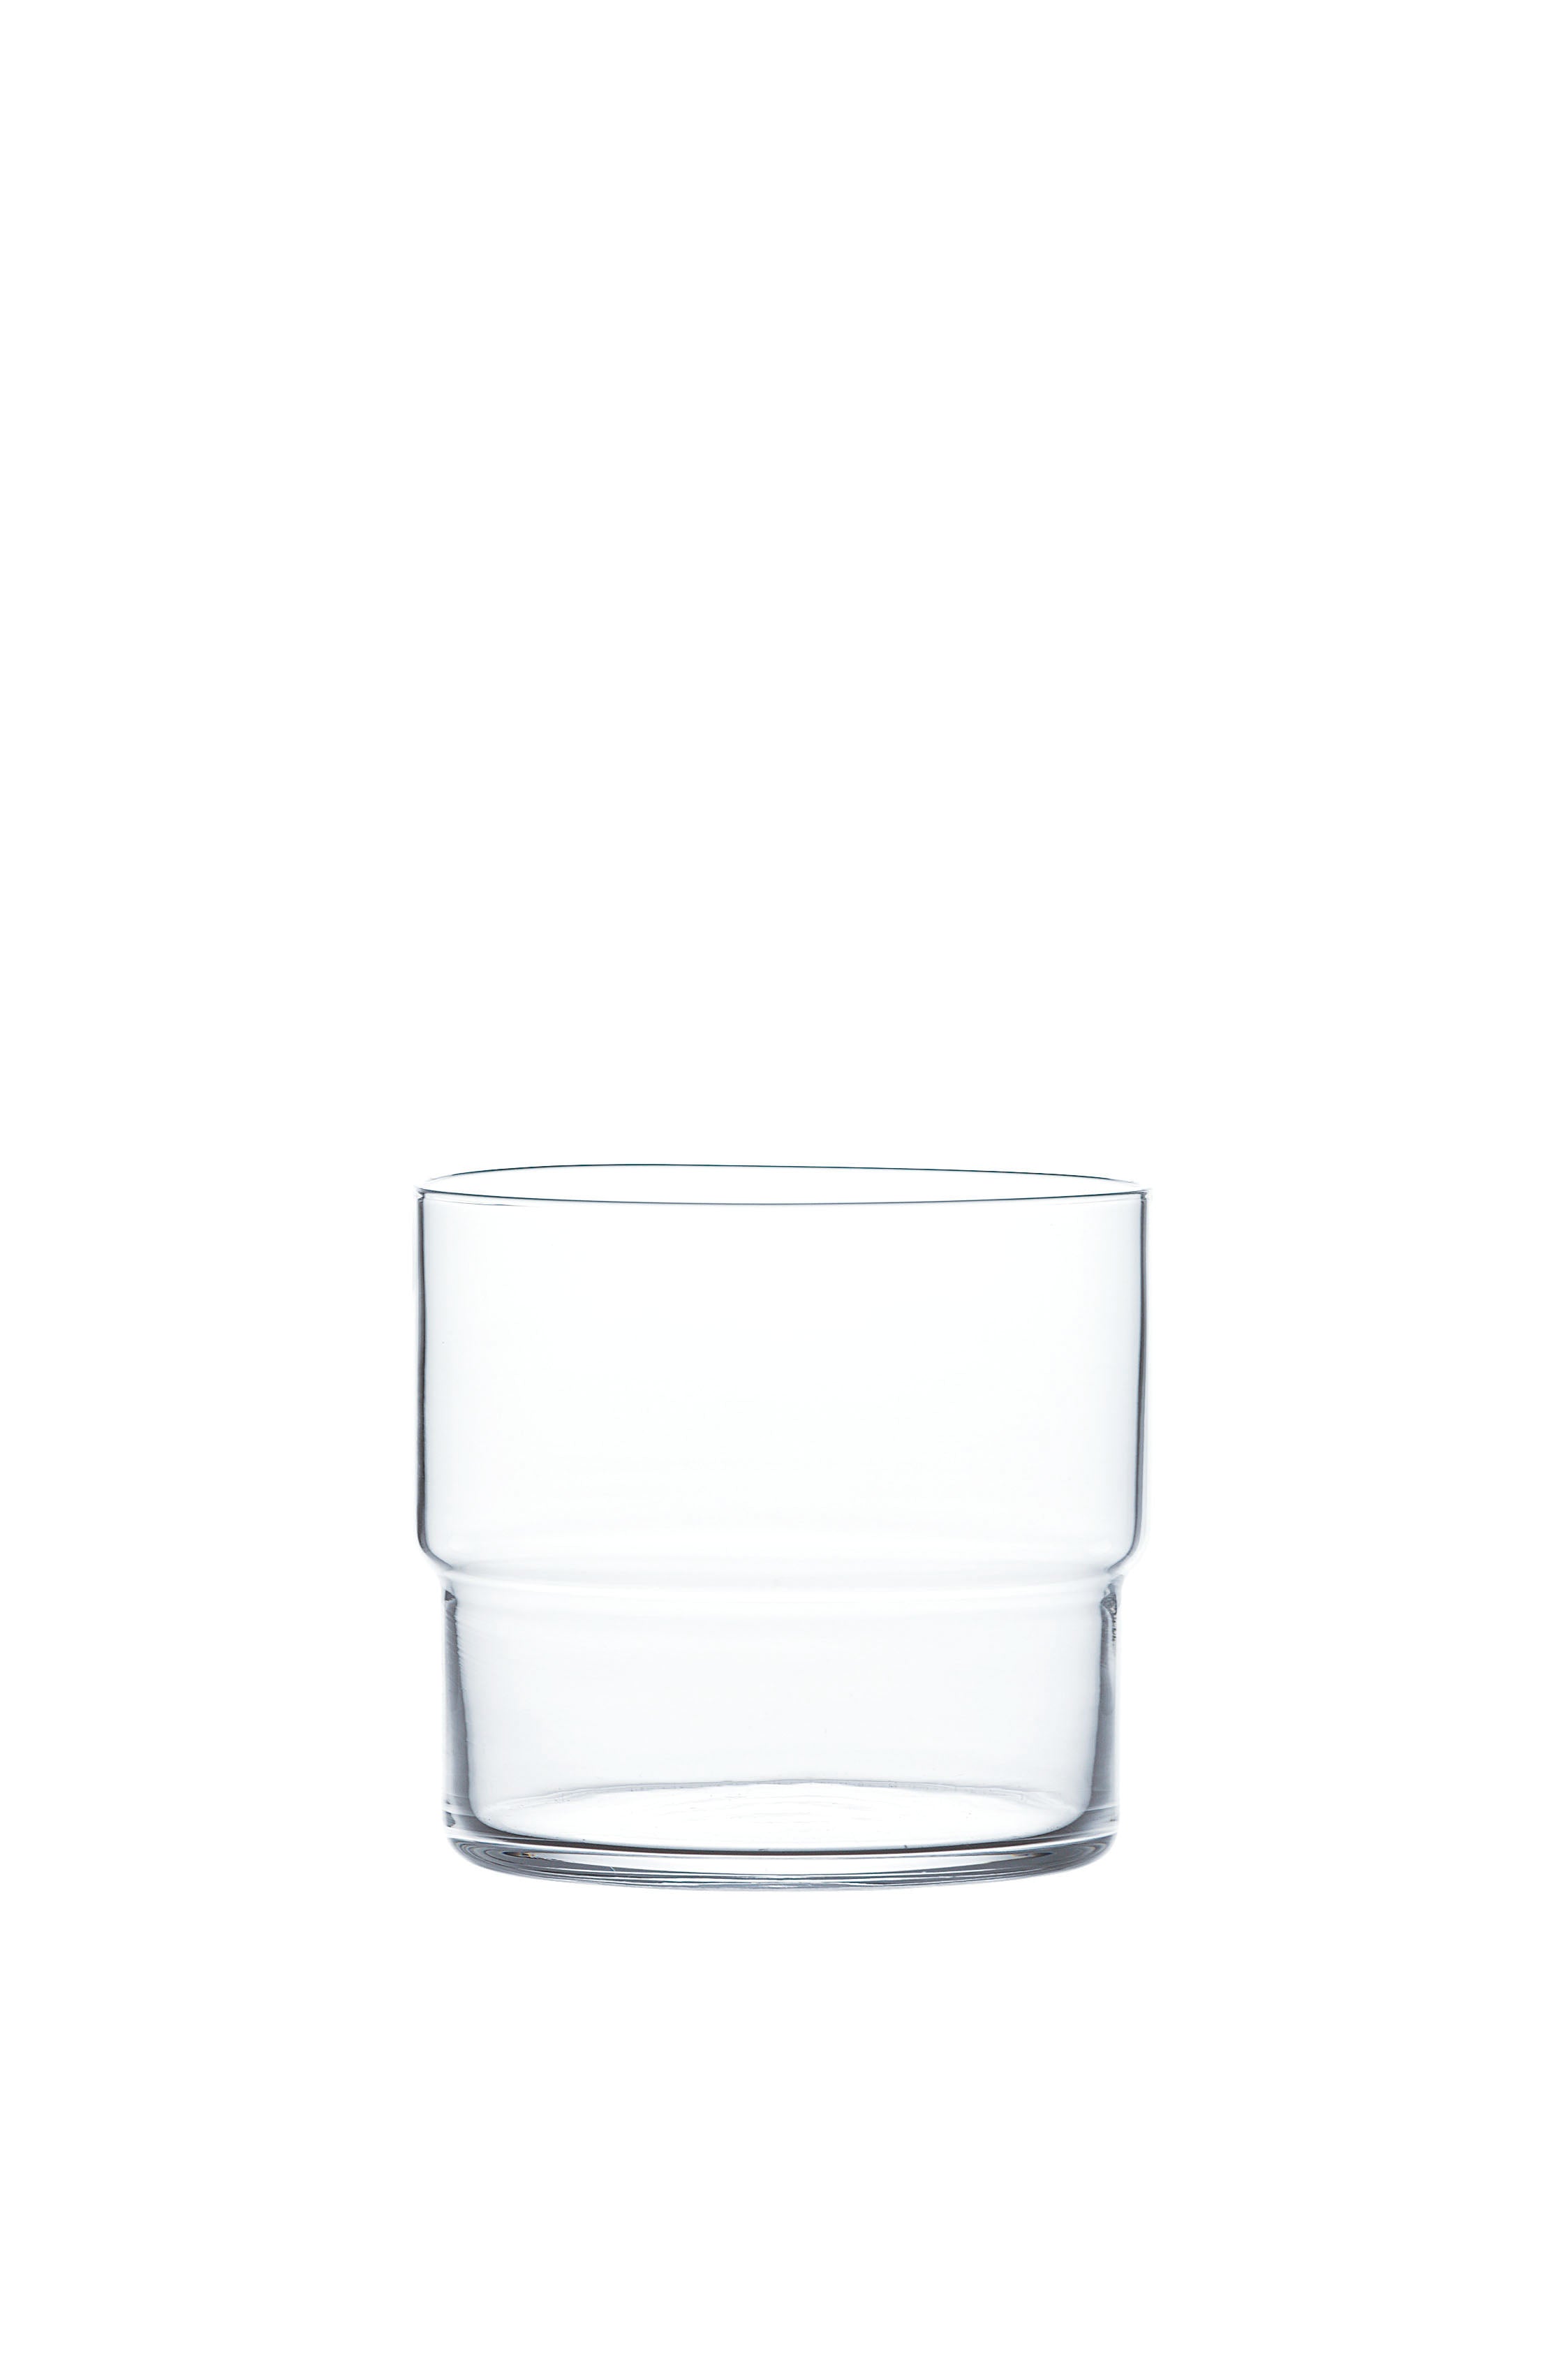 TOYO-SASAKI FINO STACKABLE GLASS TUMBLER SET OF 6